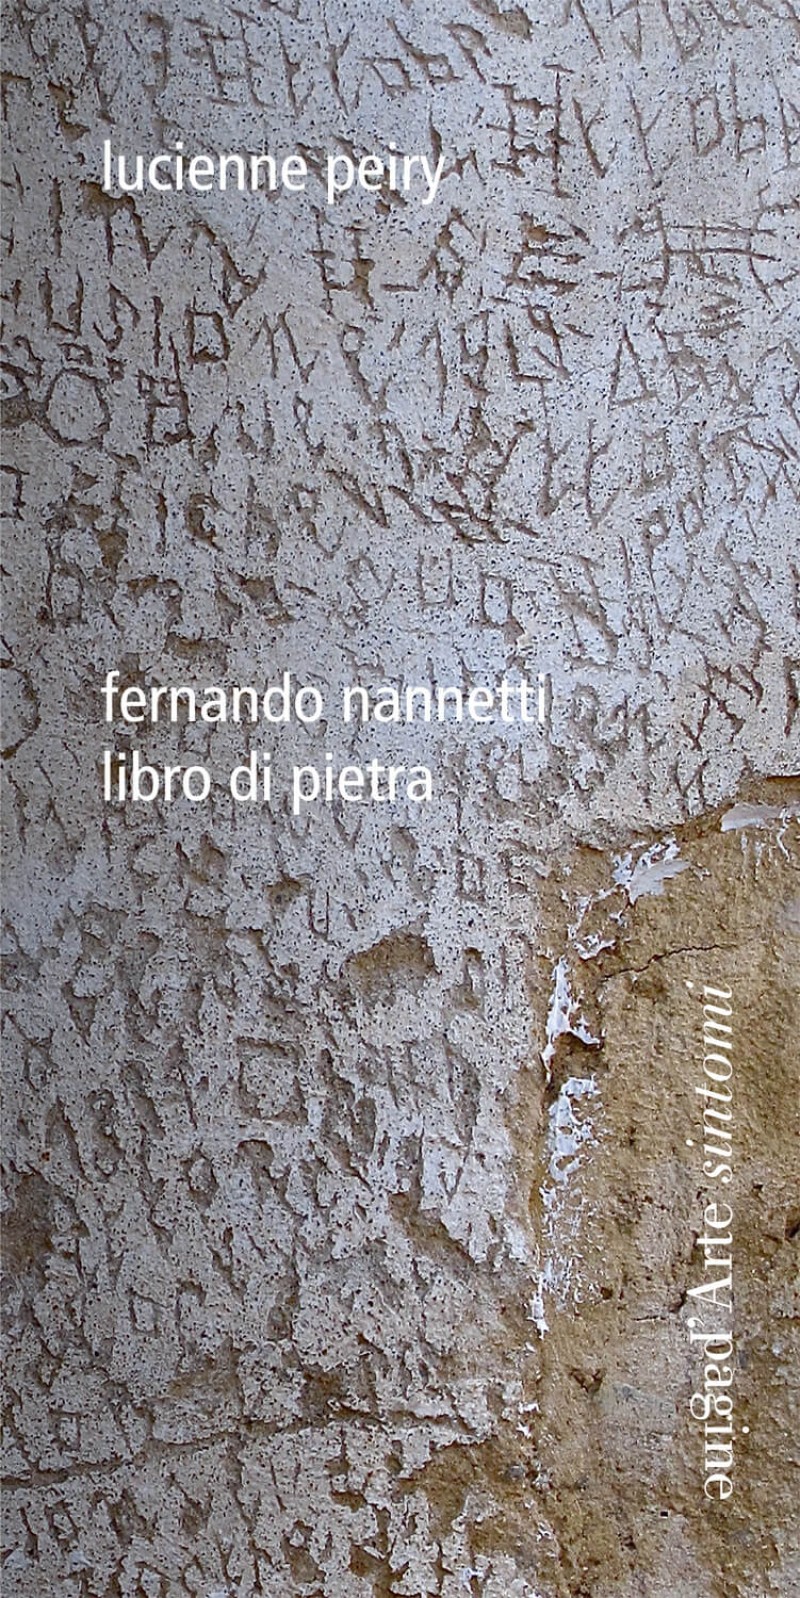 Libro di pietra, Tesserete, Pagine d’Arte, 2021.